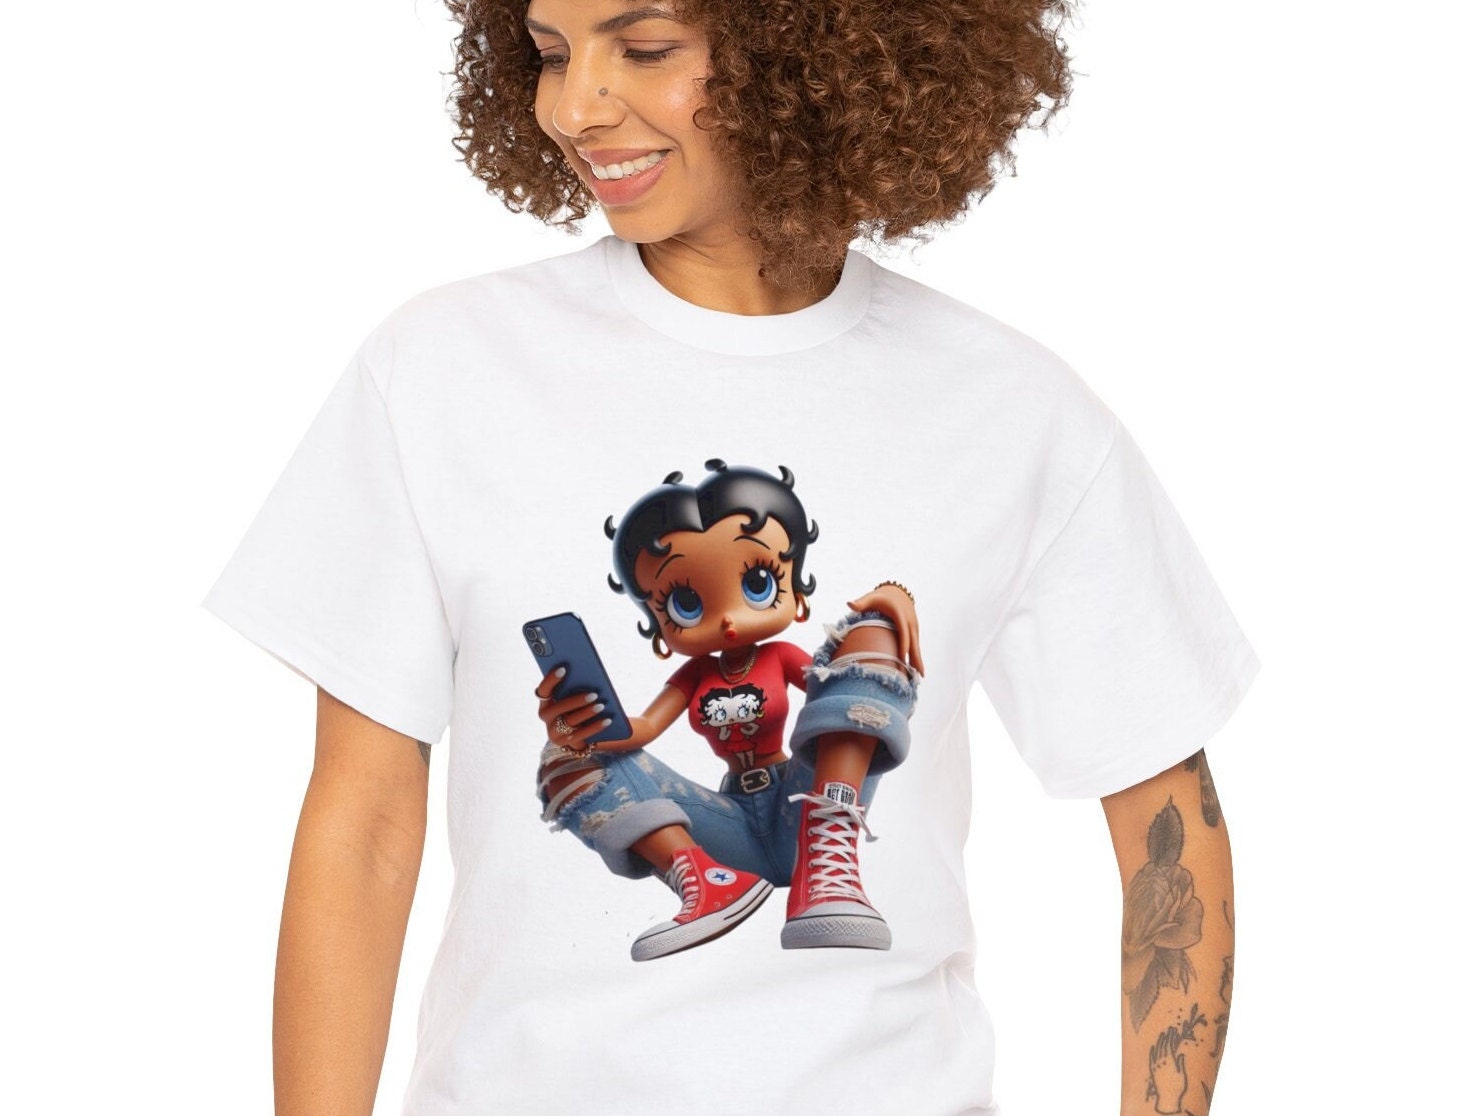 Betty Boop Lover, Betty Boop Shirt, Street wear shirt